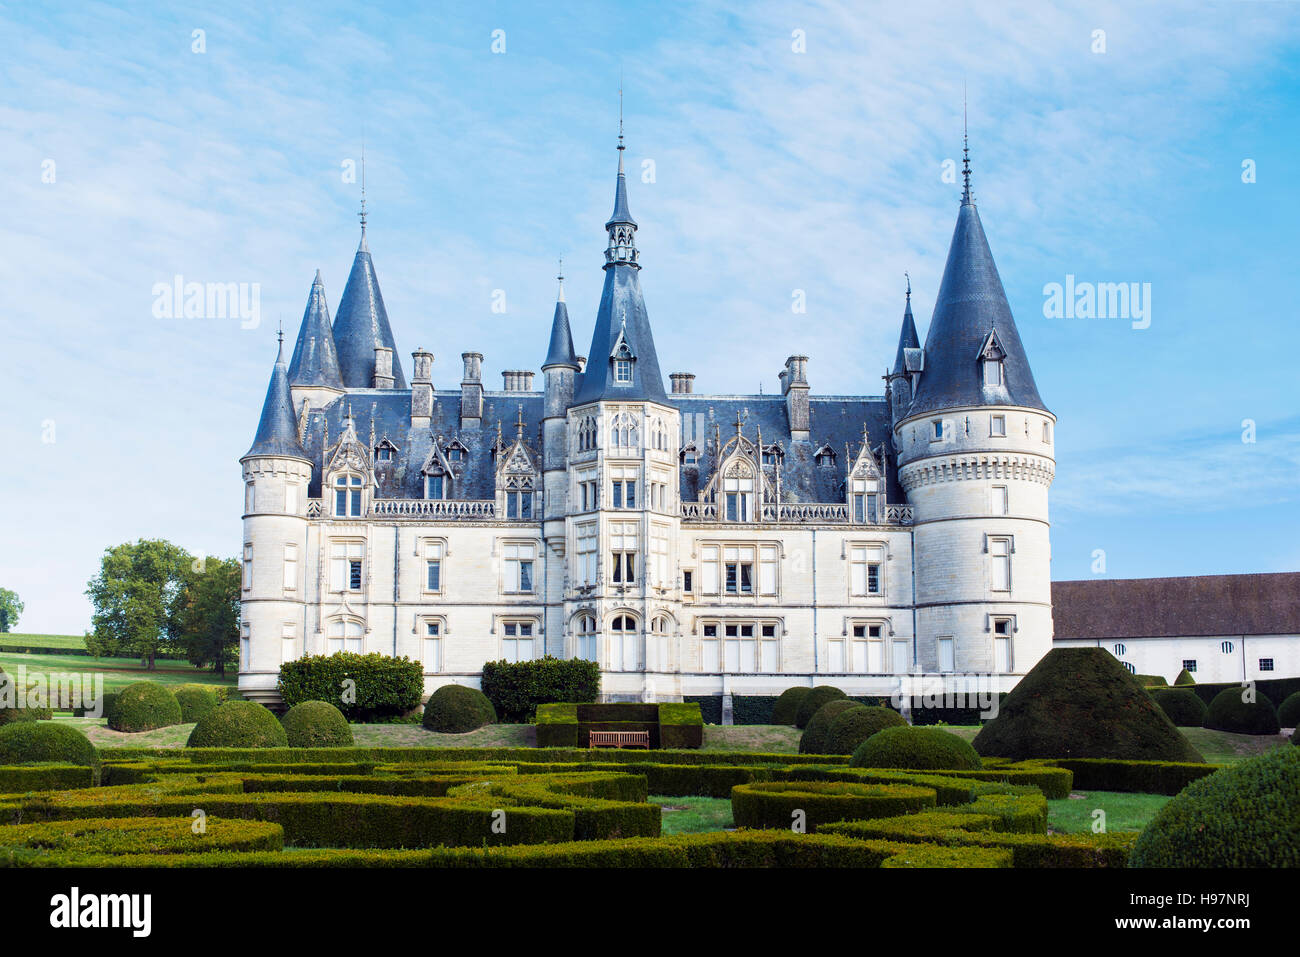 Chateau Nozet of Domaine de Ladoucette near the village of Pouilly-sur-Loire in the Loire Valley, France Stock Photo